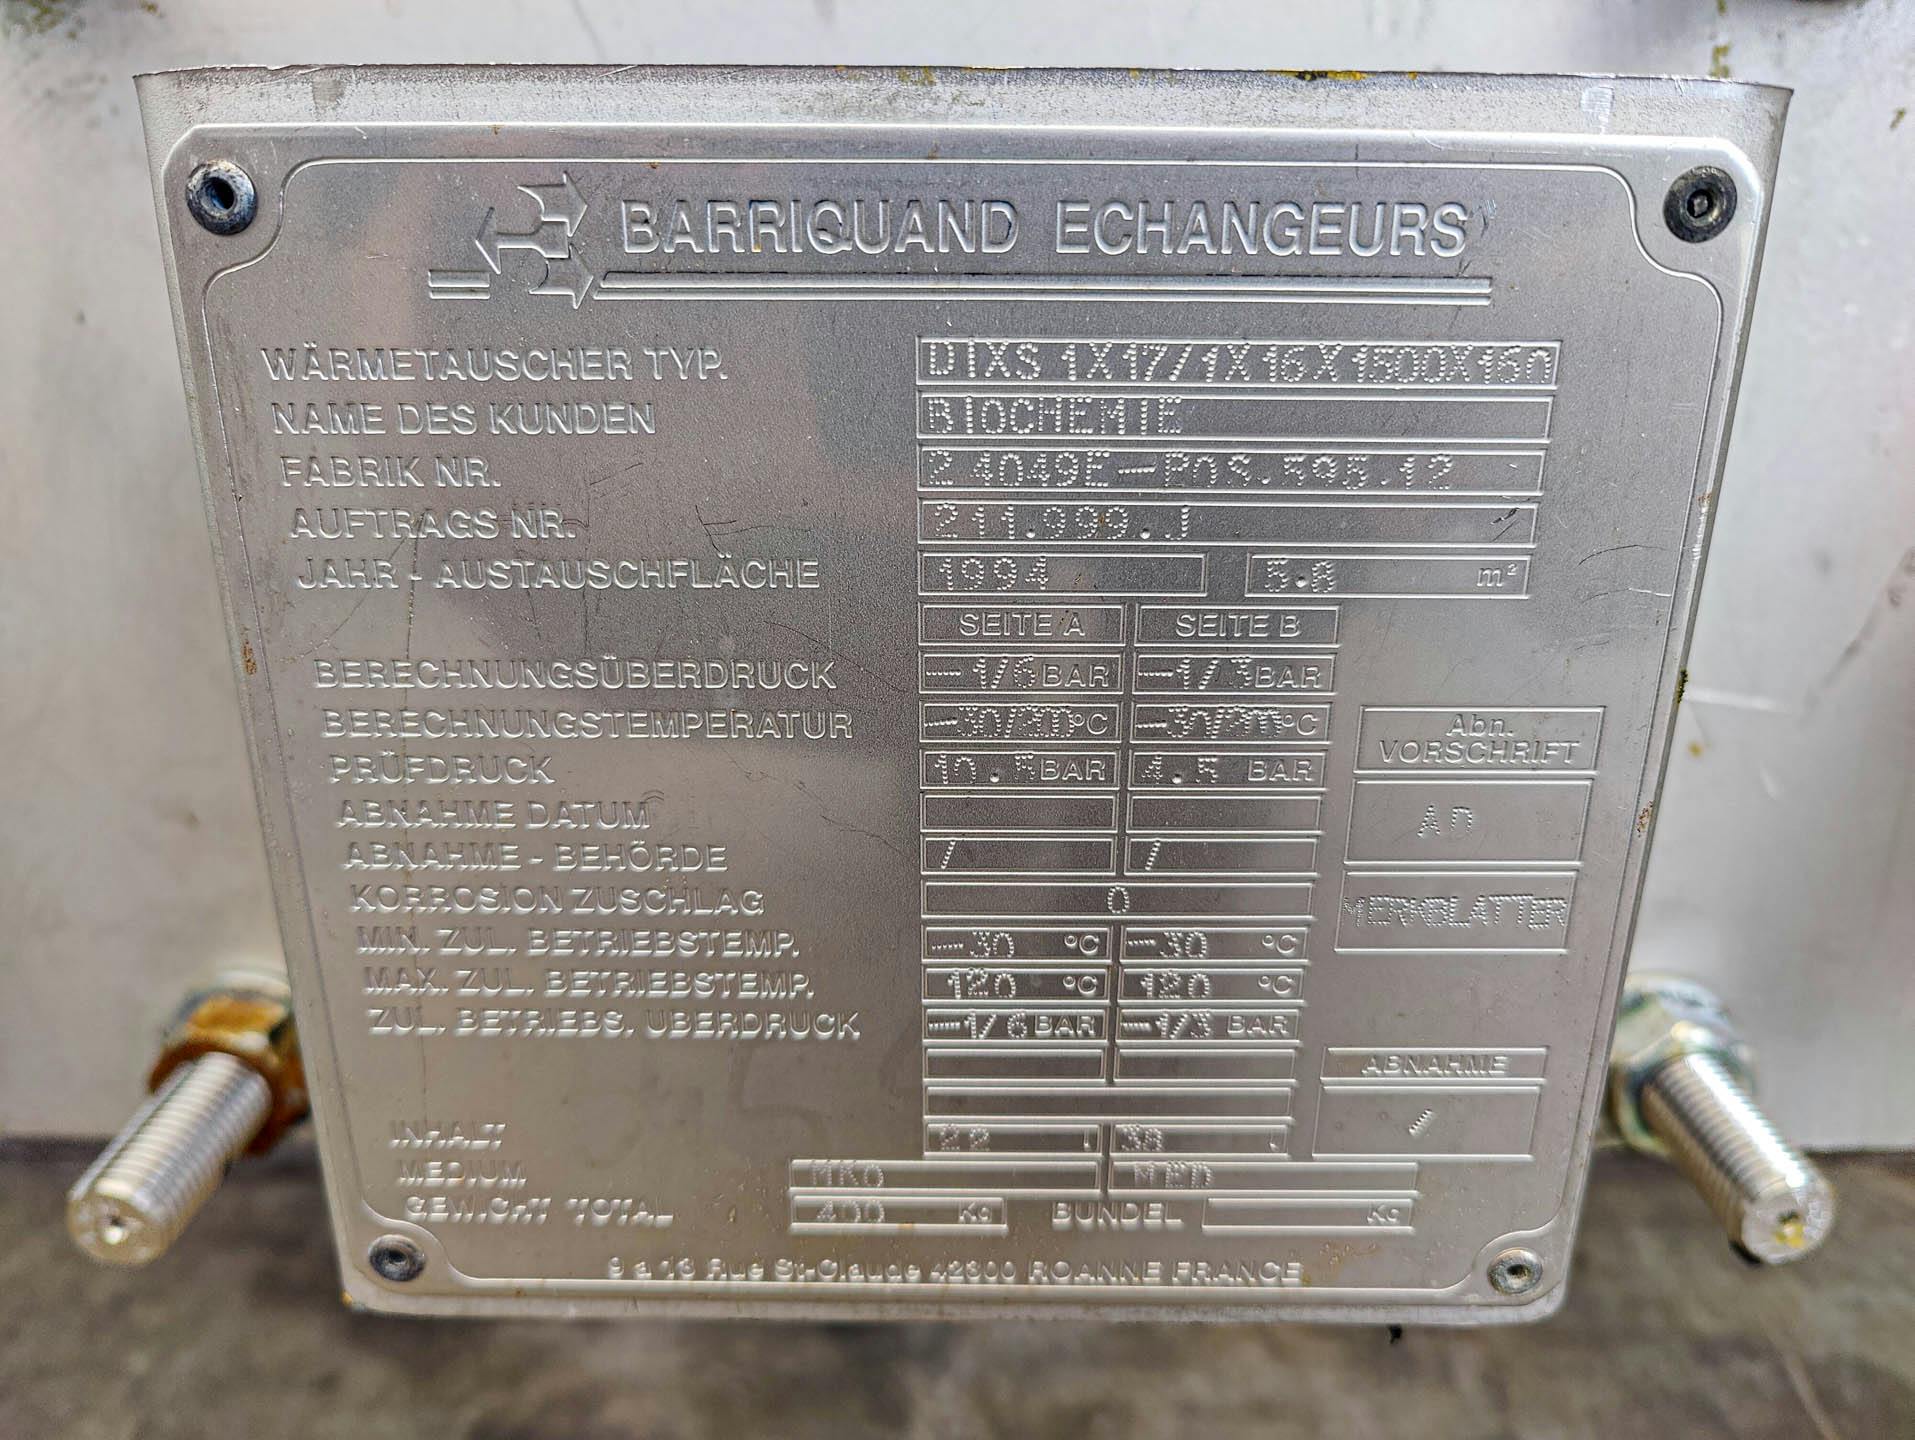 Barriquand Platular DIXS 1x17/1x16/1500/160 welded plate heat exchanger - Platen warmtewisselaar - image 6